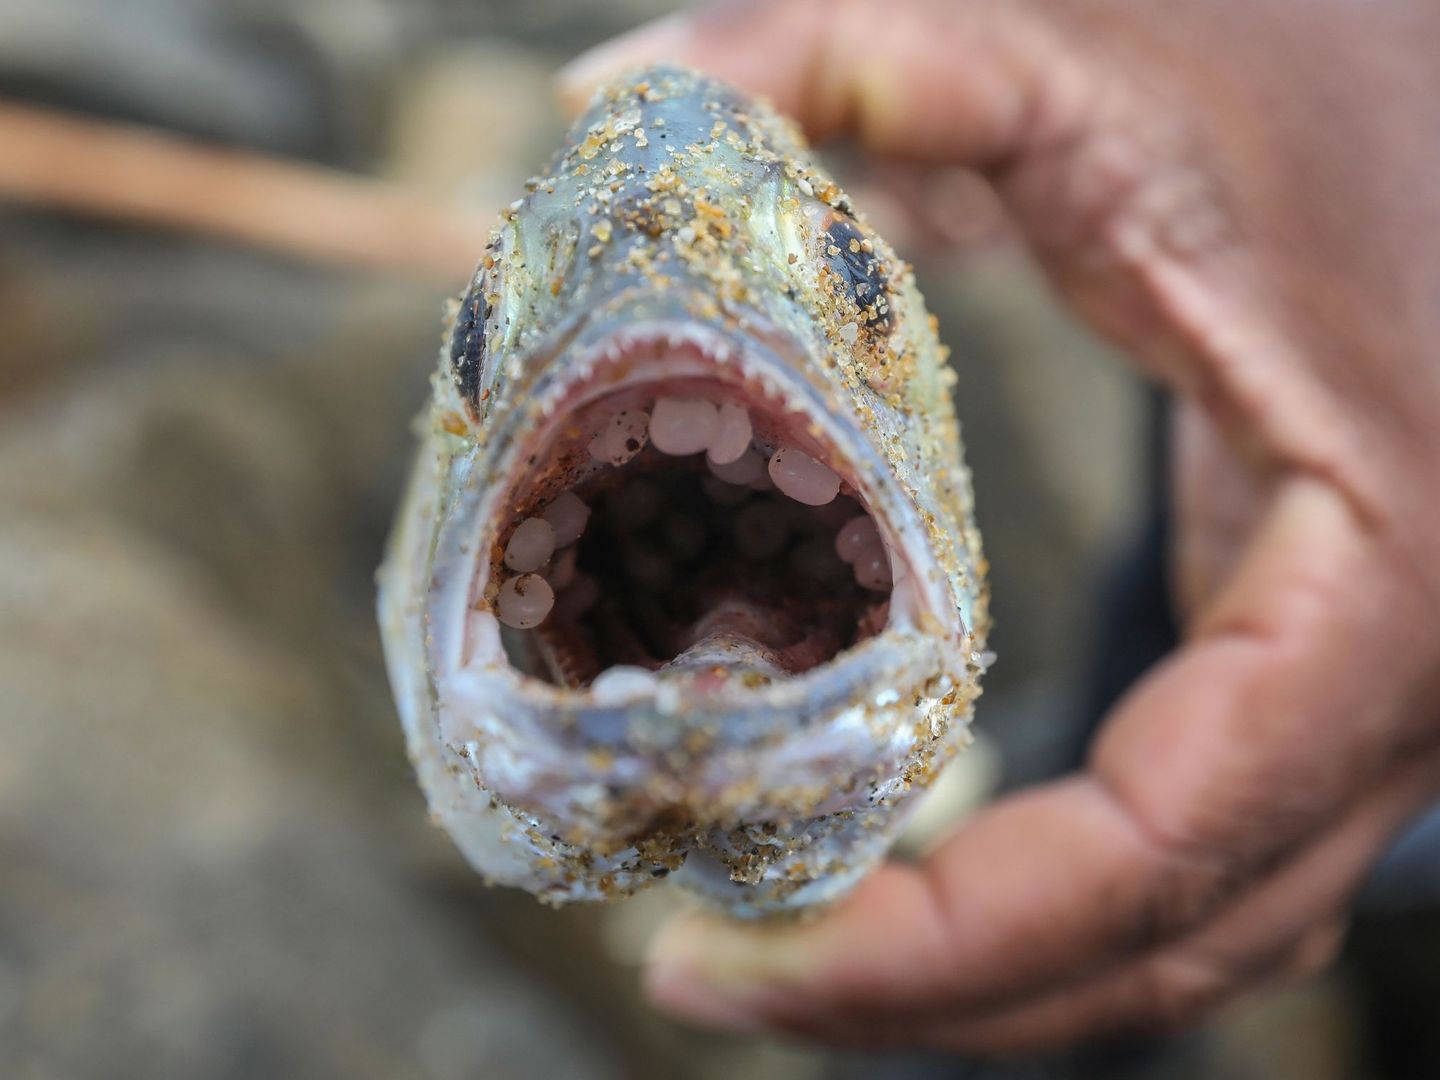 Un hombre muestra un pez muerto cuya boca ha aparecido llena de residuos plásticos tras el incendio en un barco que transportaba productos químicos en la costa de Sri Lanka. (EFE/Chamila Karunarathne)